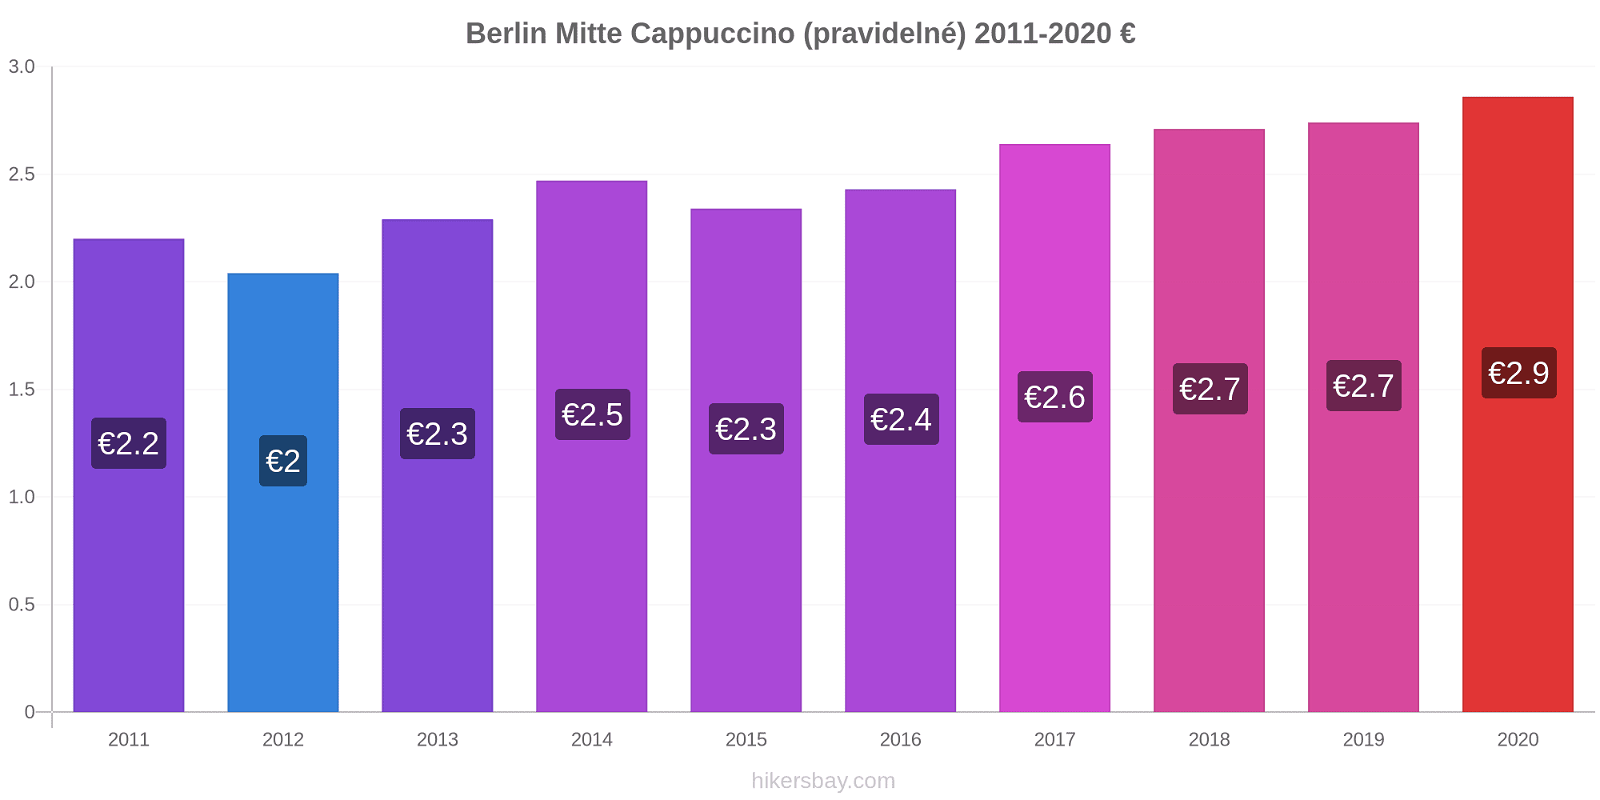 Berlin Mitte změny cen Cappuccino (pravidelné) hikersbay.com